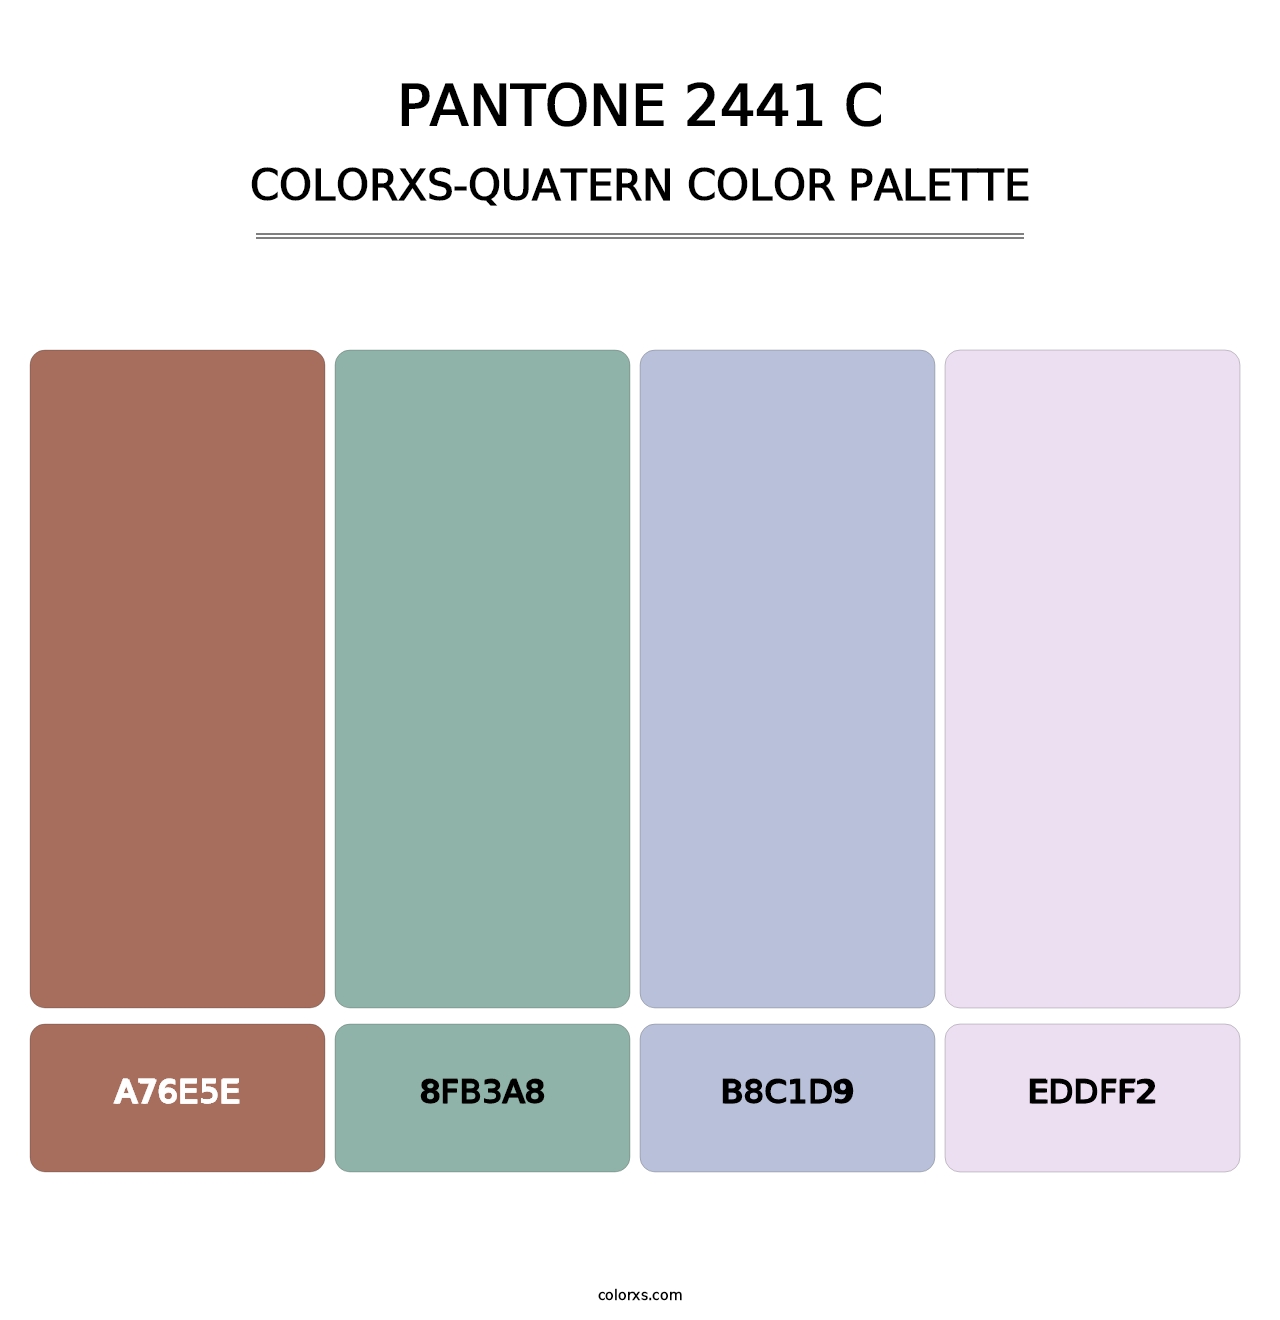 PANTONE 2441 C - Colorxs Quatern Palette